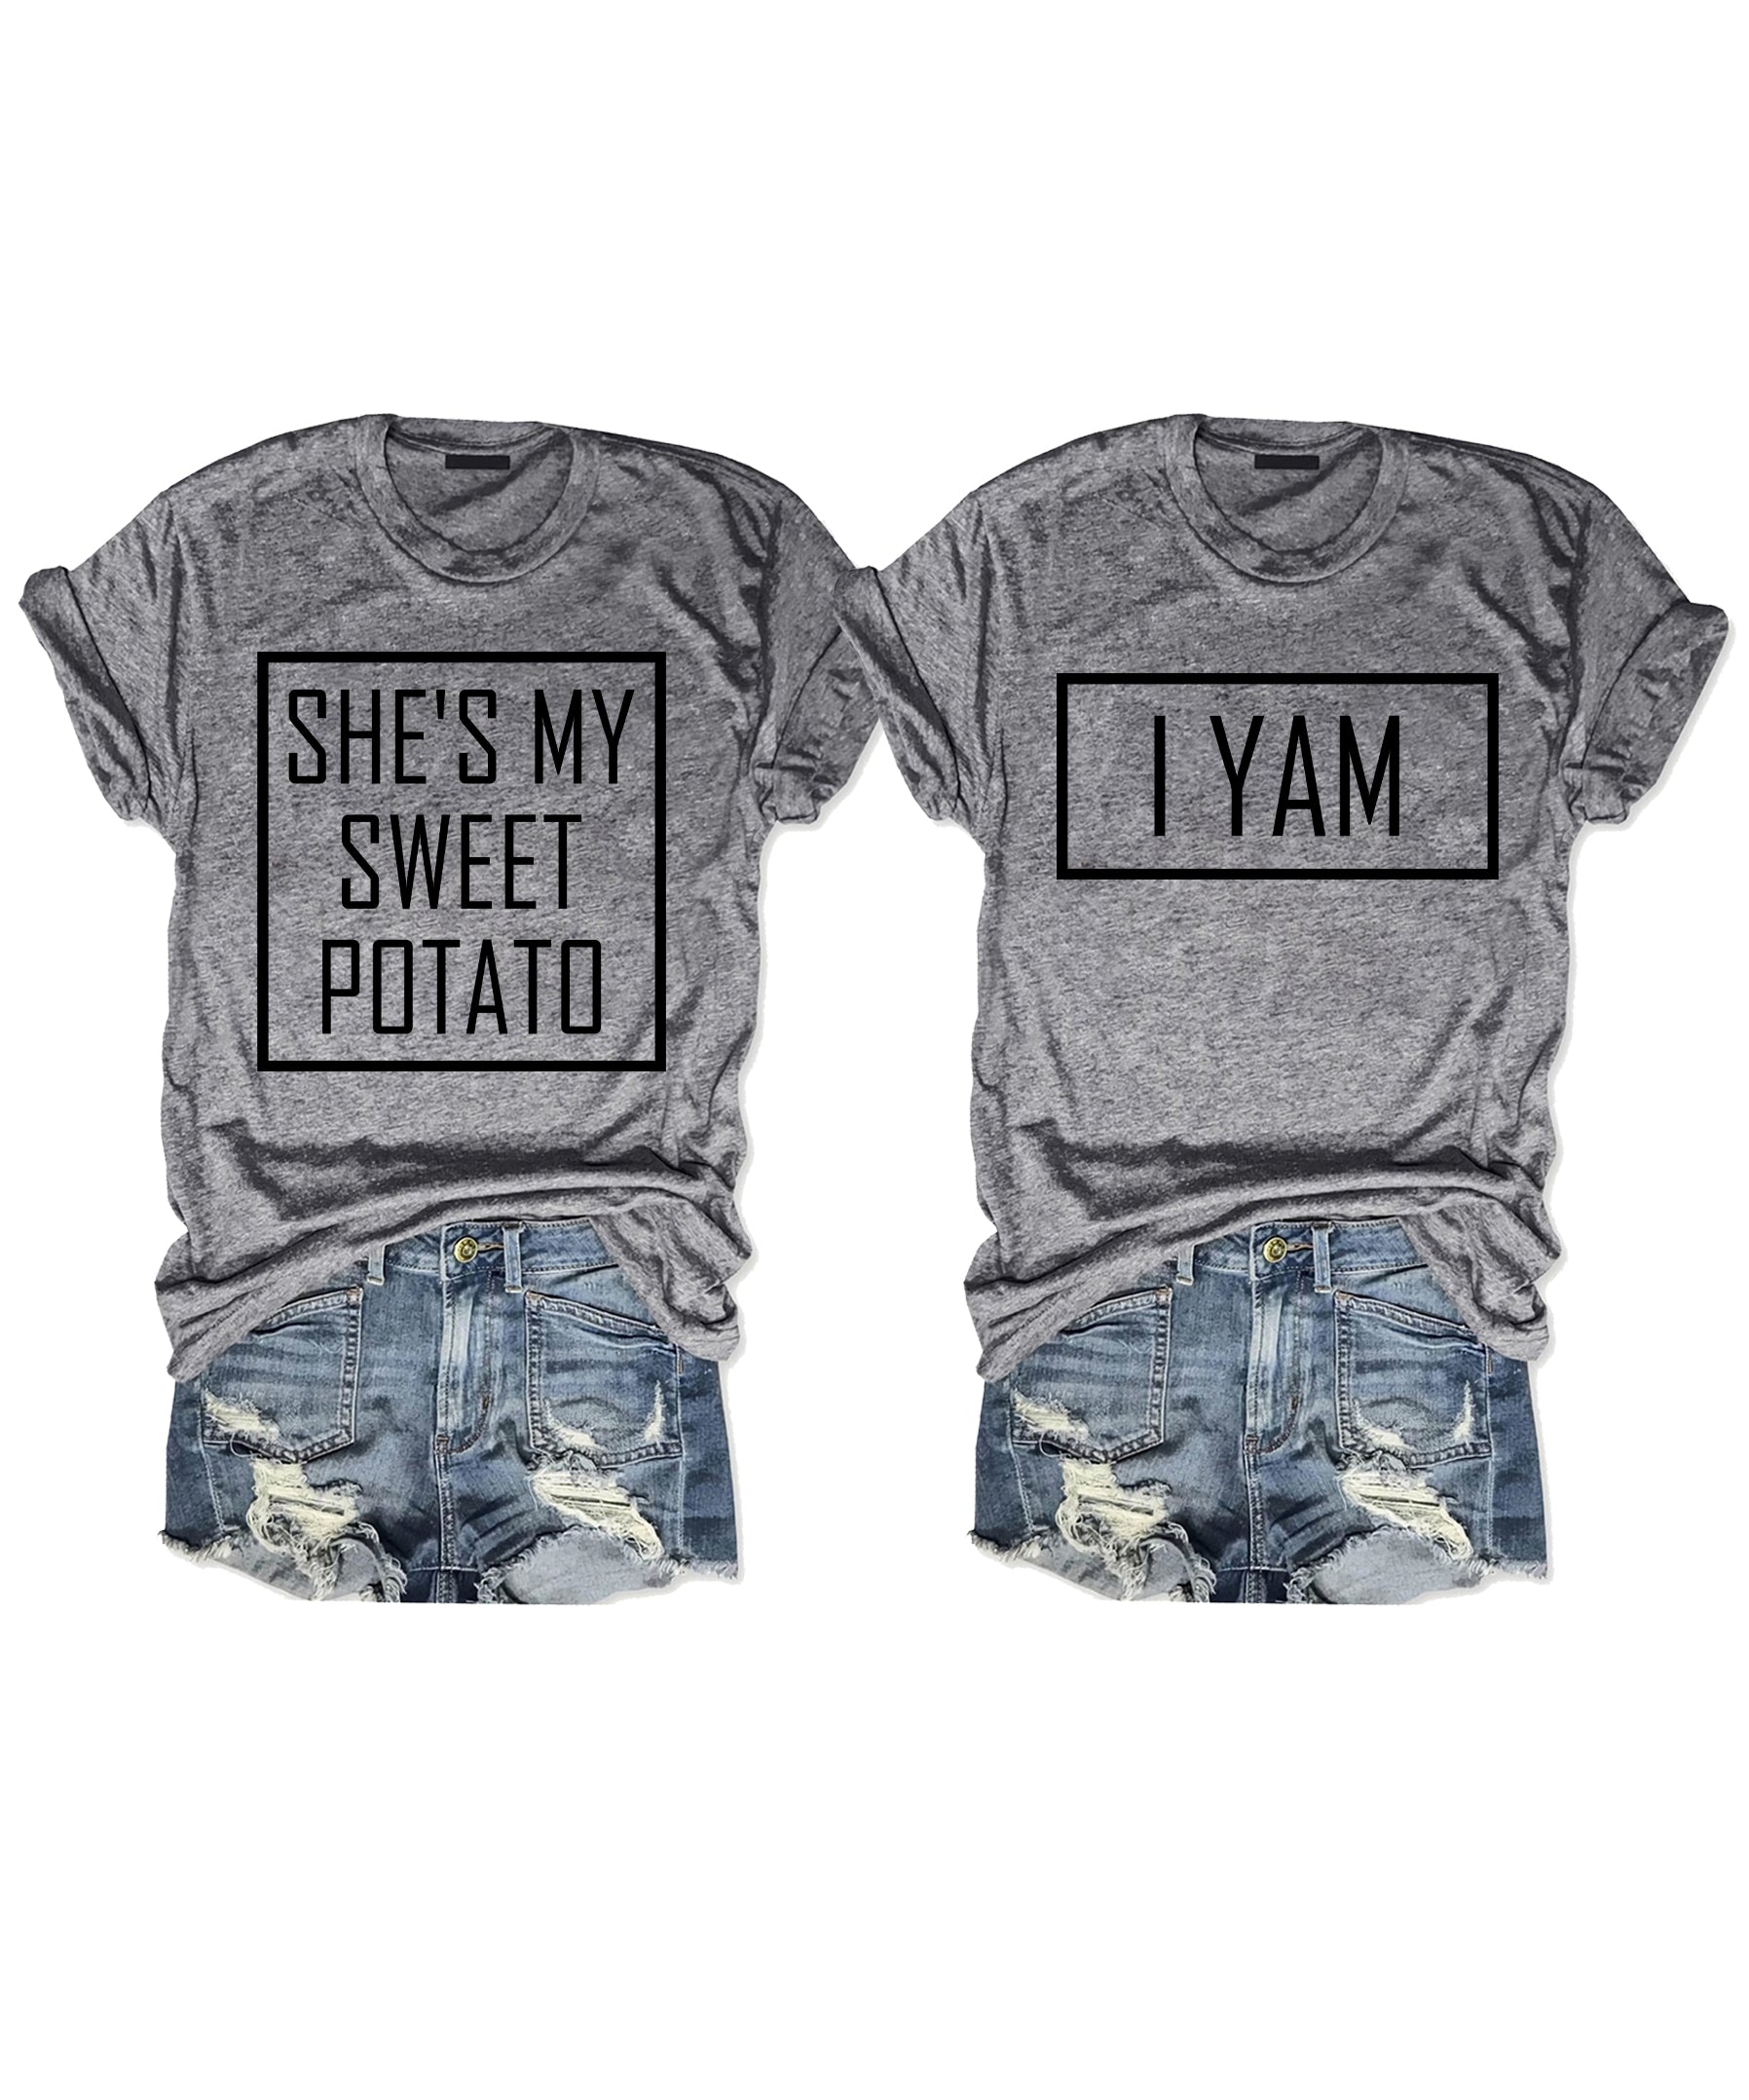 She's My Sweet Potato I Yam T-shirt